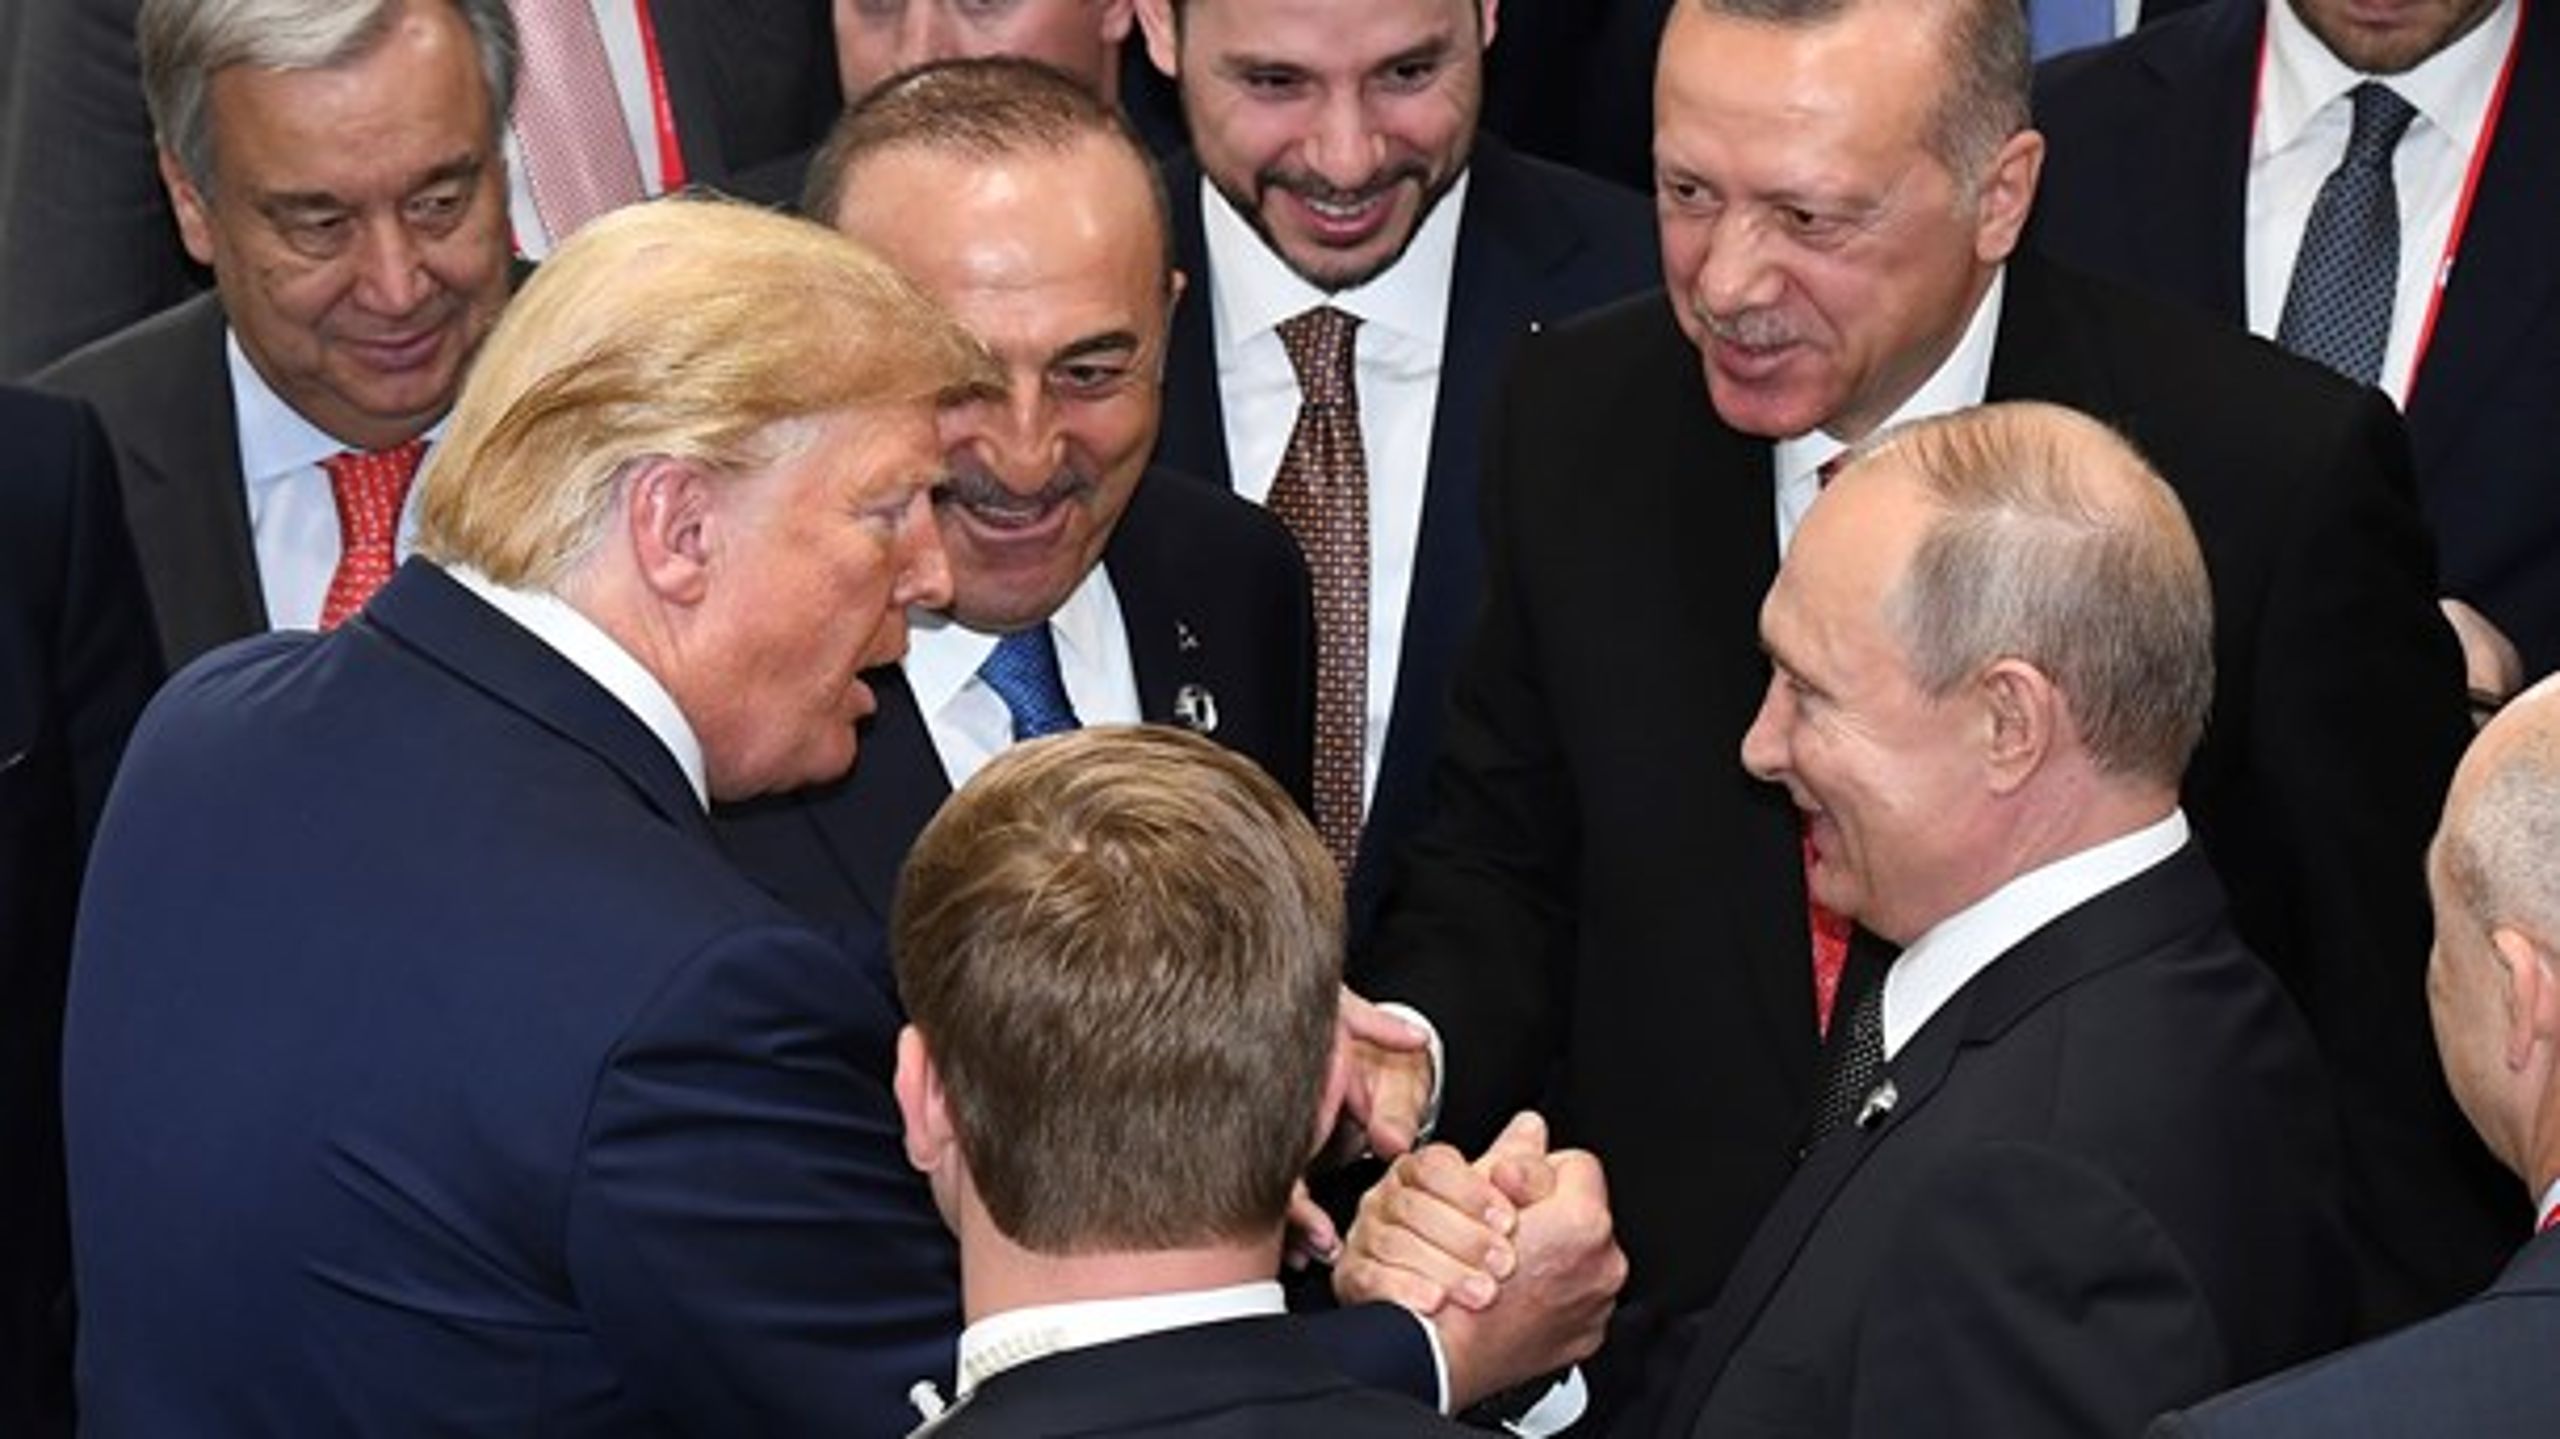 Donald Trump skakar hand med Vladimir Putin&nbsp;medan Recep Tayyip Erdogan och&nbsp;Antonio Guterres&nbsp;ser på, under G-20 summit i Japan, 29 juni 2019.